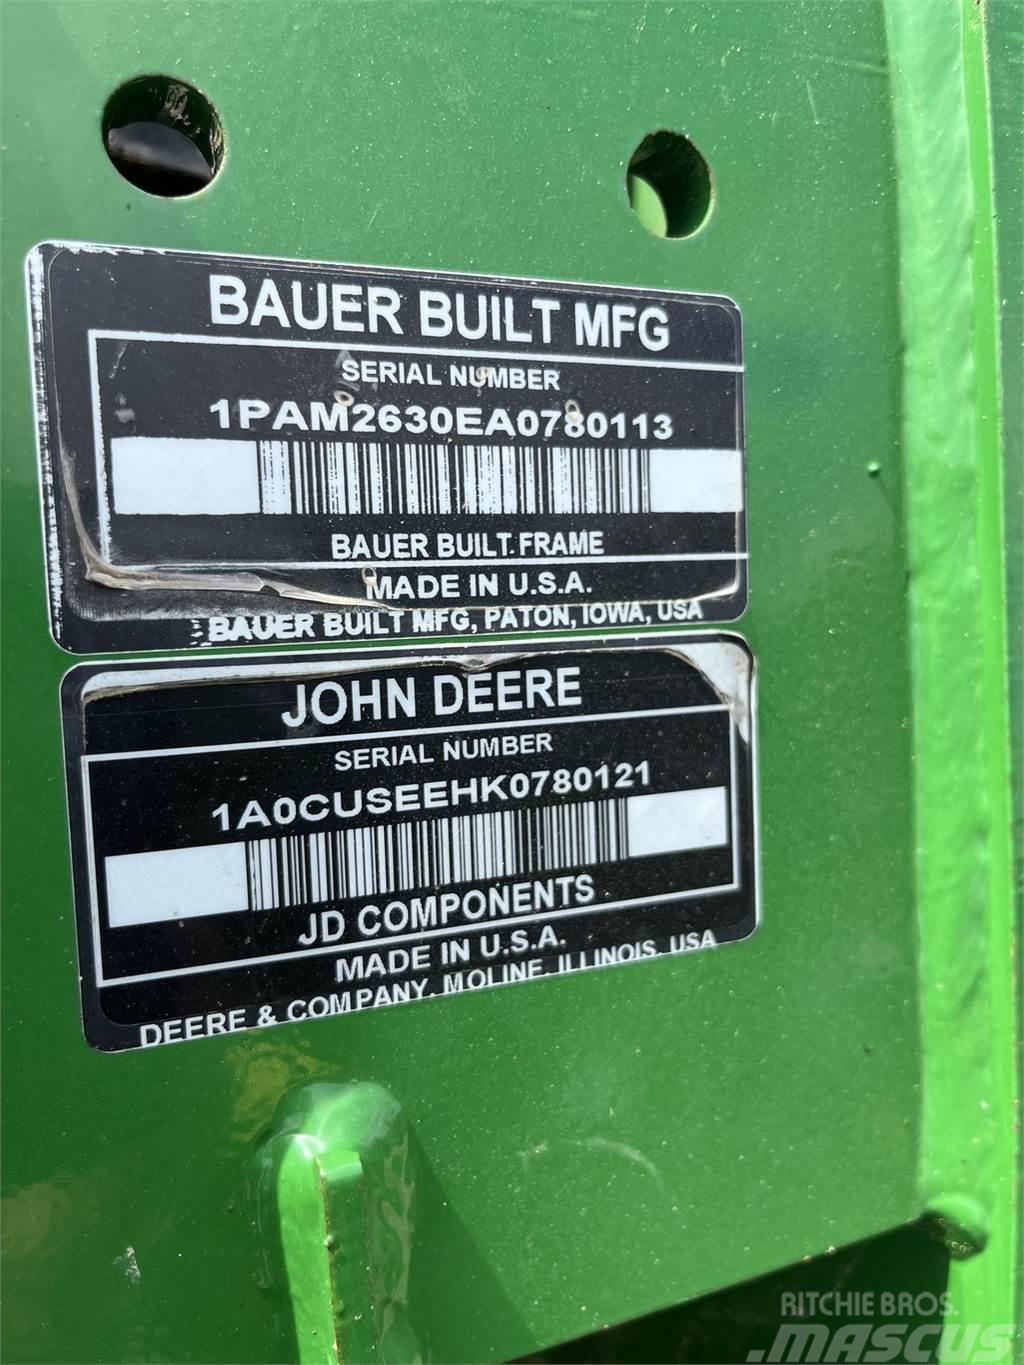 John Deere DB66 Trapiantatrici